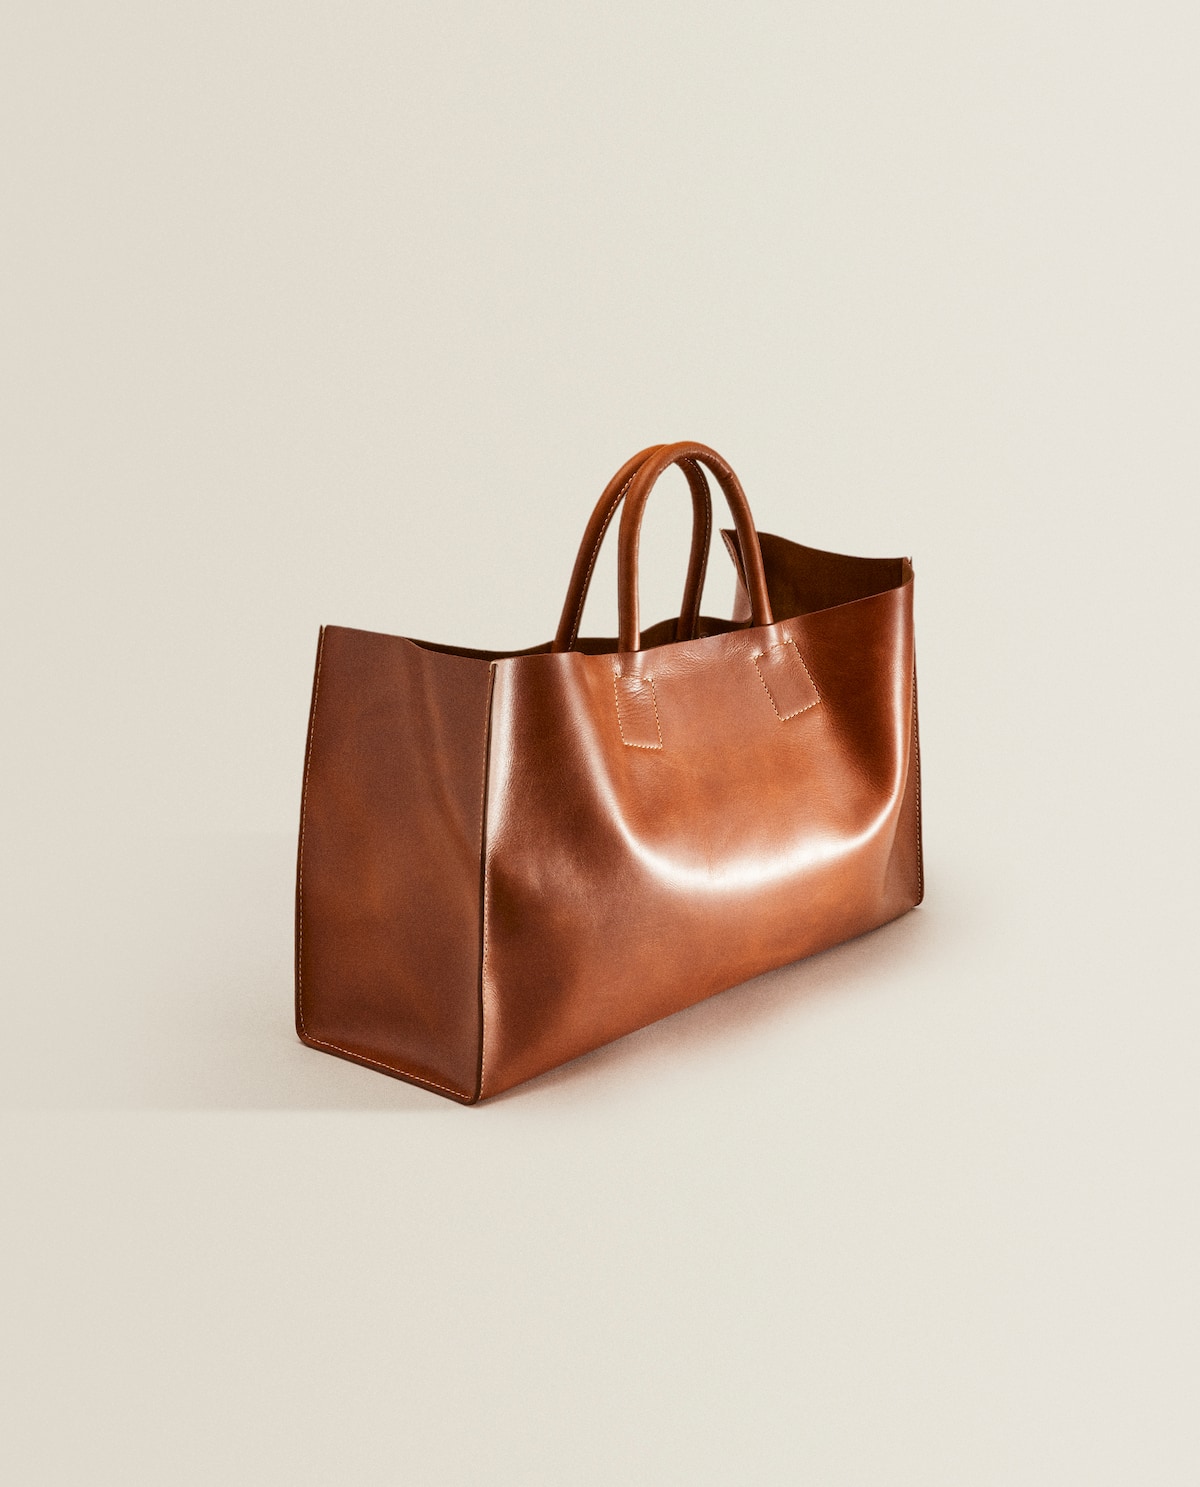 Zara Home: El tacto y el diseño minimalista este bolso de piel son indescriptibles